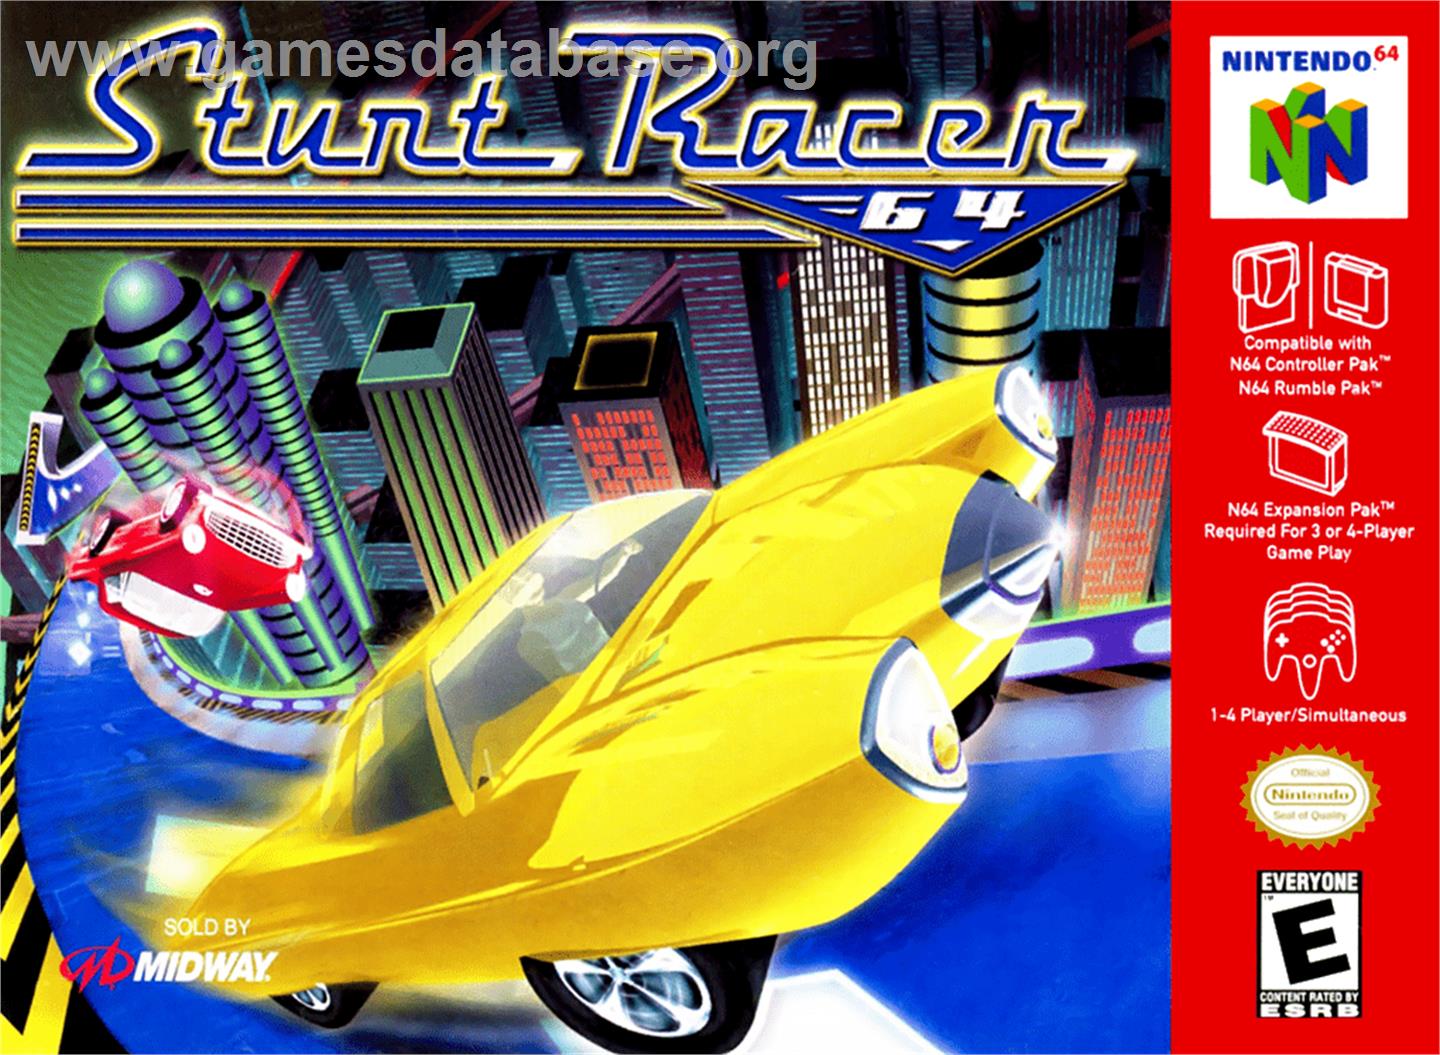 Stunt Racer 64 - Nintendo N64 - Artwork - Box